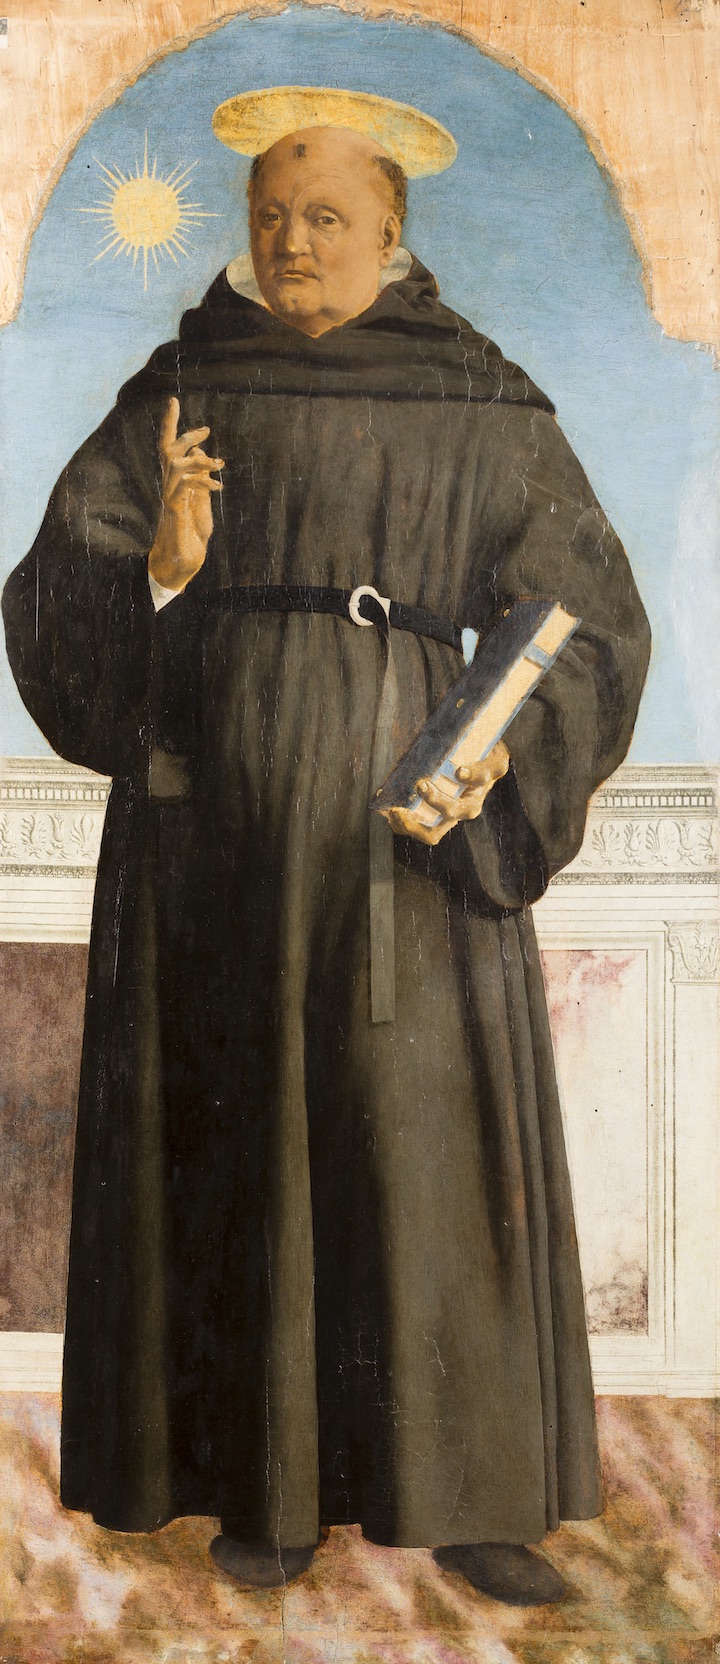 Saint Nicholas of Tolentino (1454-1469), Piero della Francesca. Courtesy of Poldi Pezzoli Museum, Milan